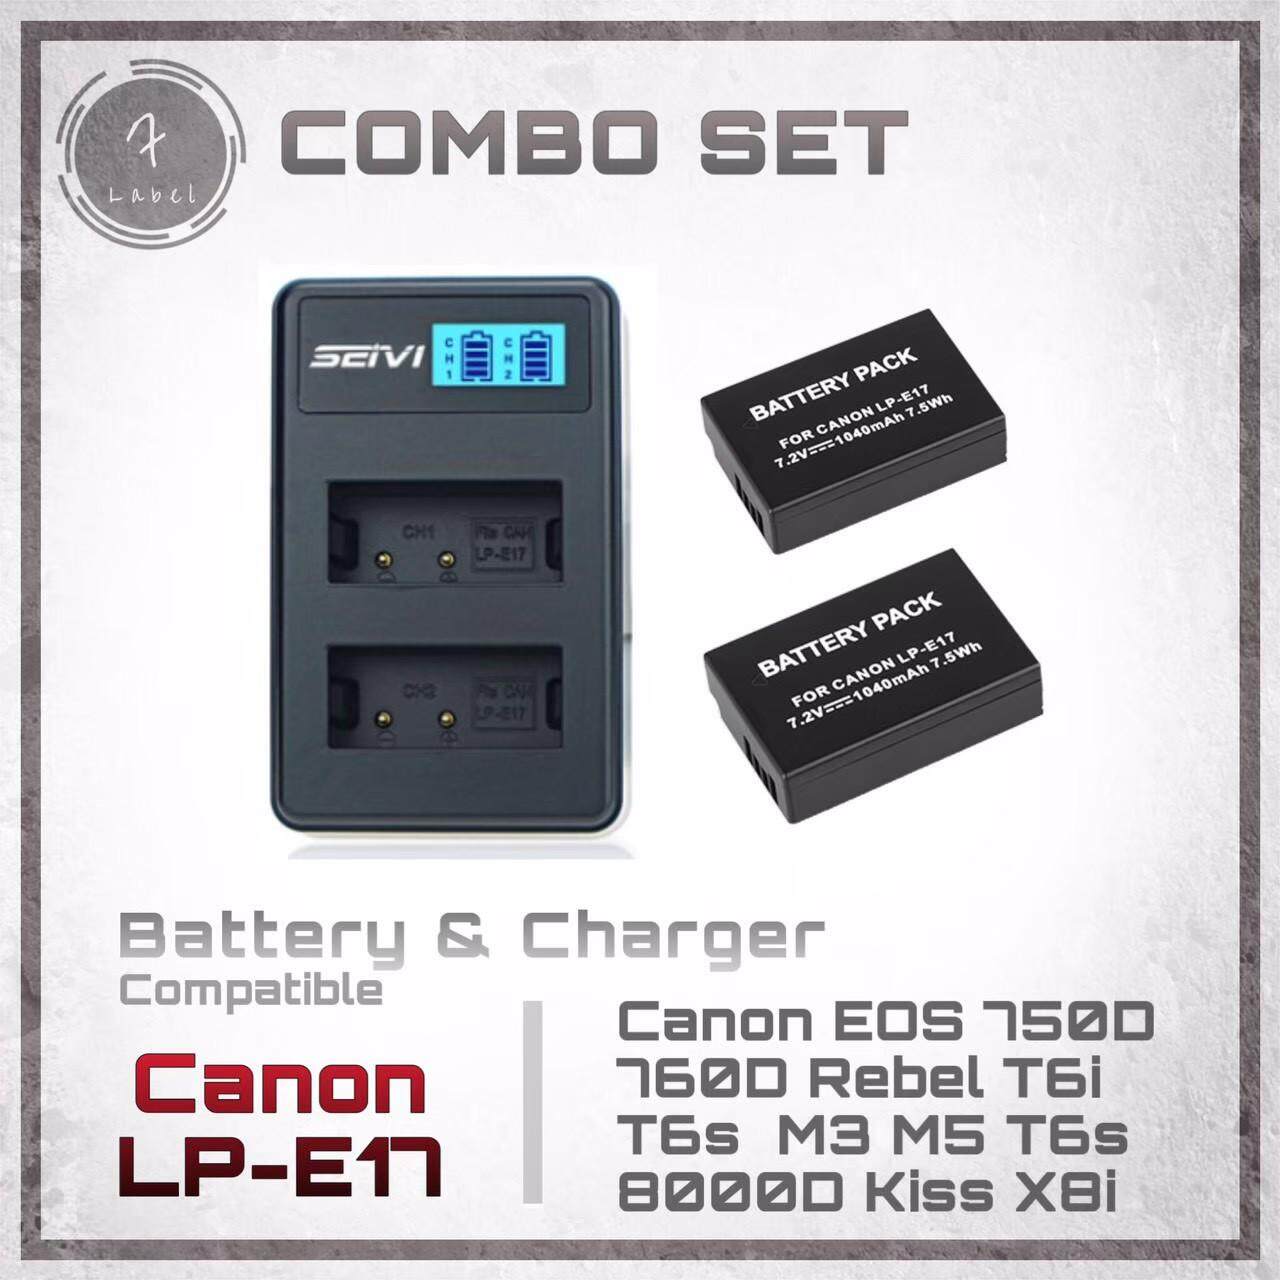 Combo Set : แบตกล้อง Canon LP-E17 + แท่นชาร์จ(แถมถุงผ้า) สำหรับกล้อง Canon EOS Rebel T6i 750D T6s 760D M3 M5 T6s 8000D Kiss X8i